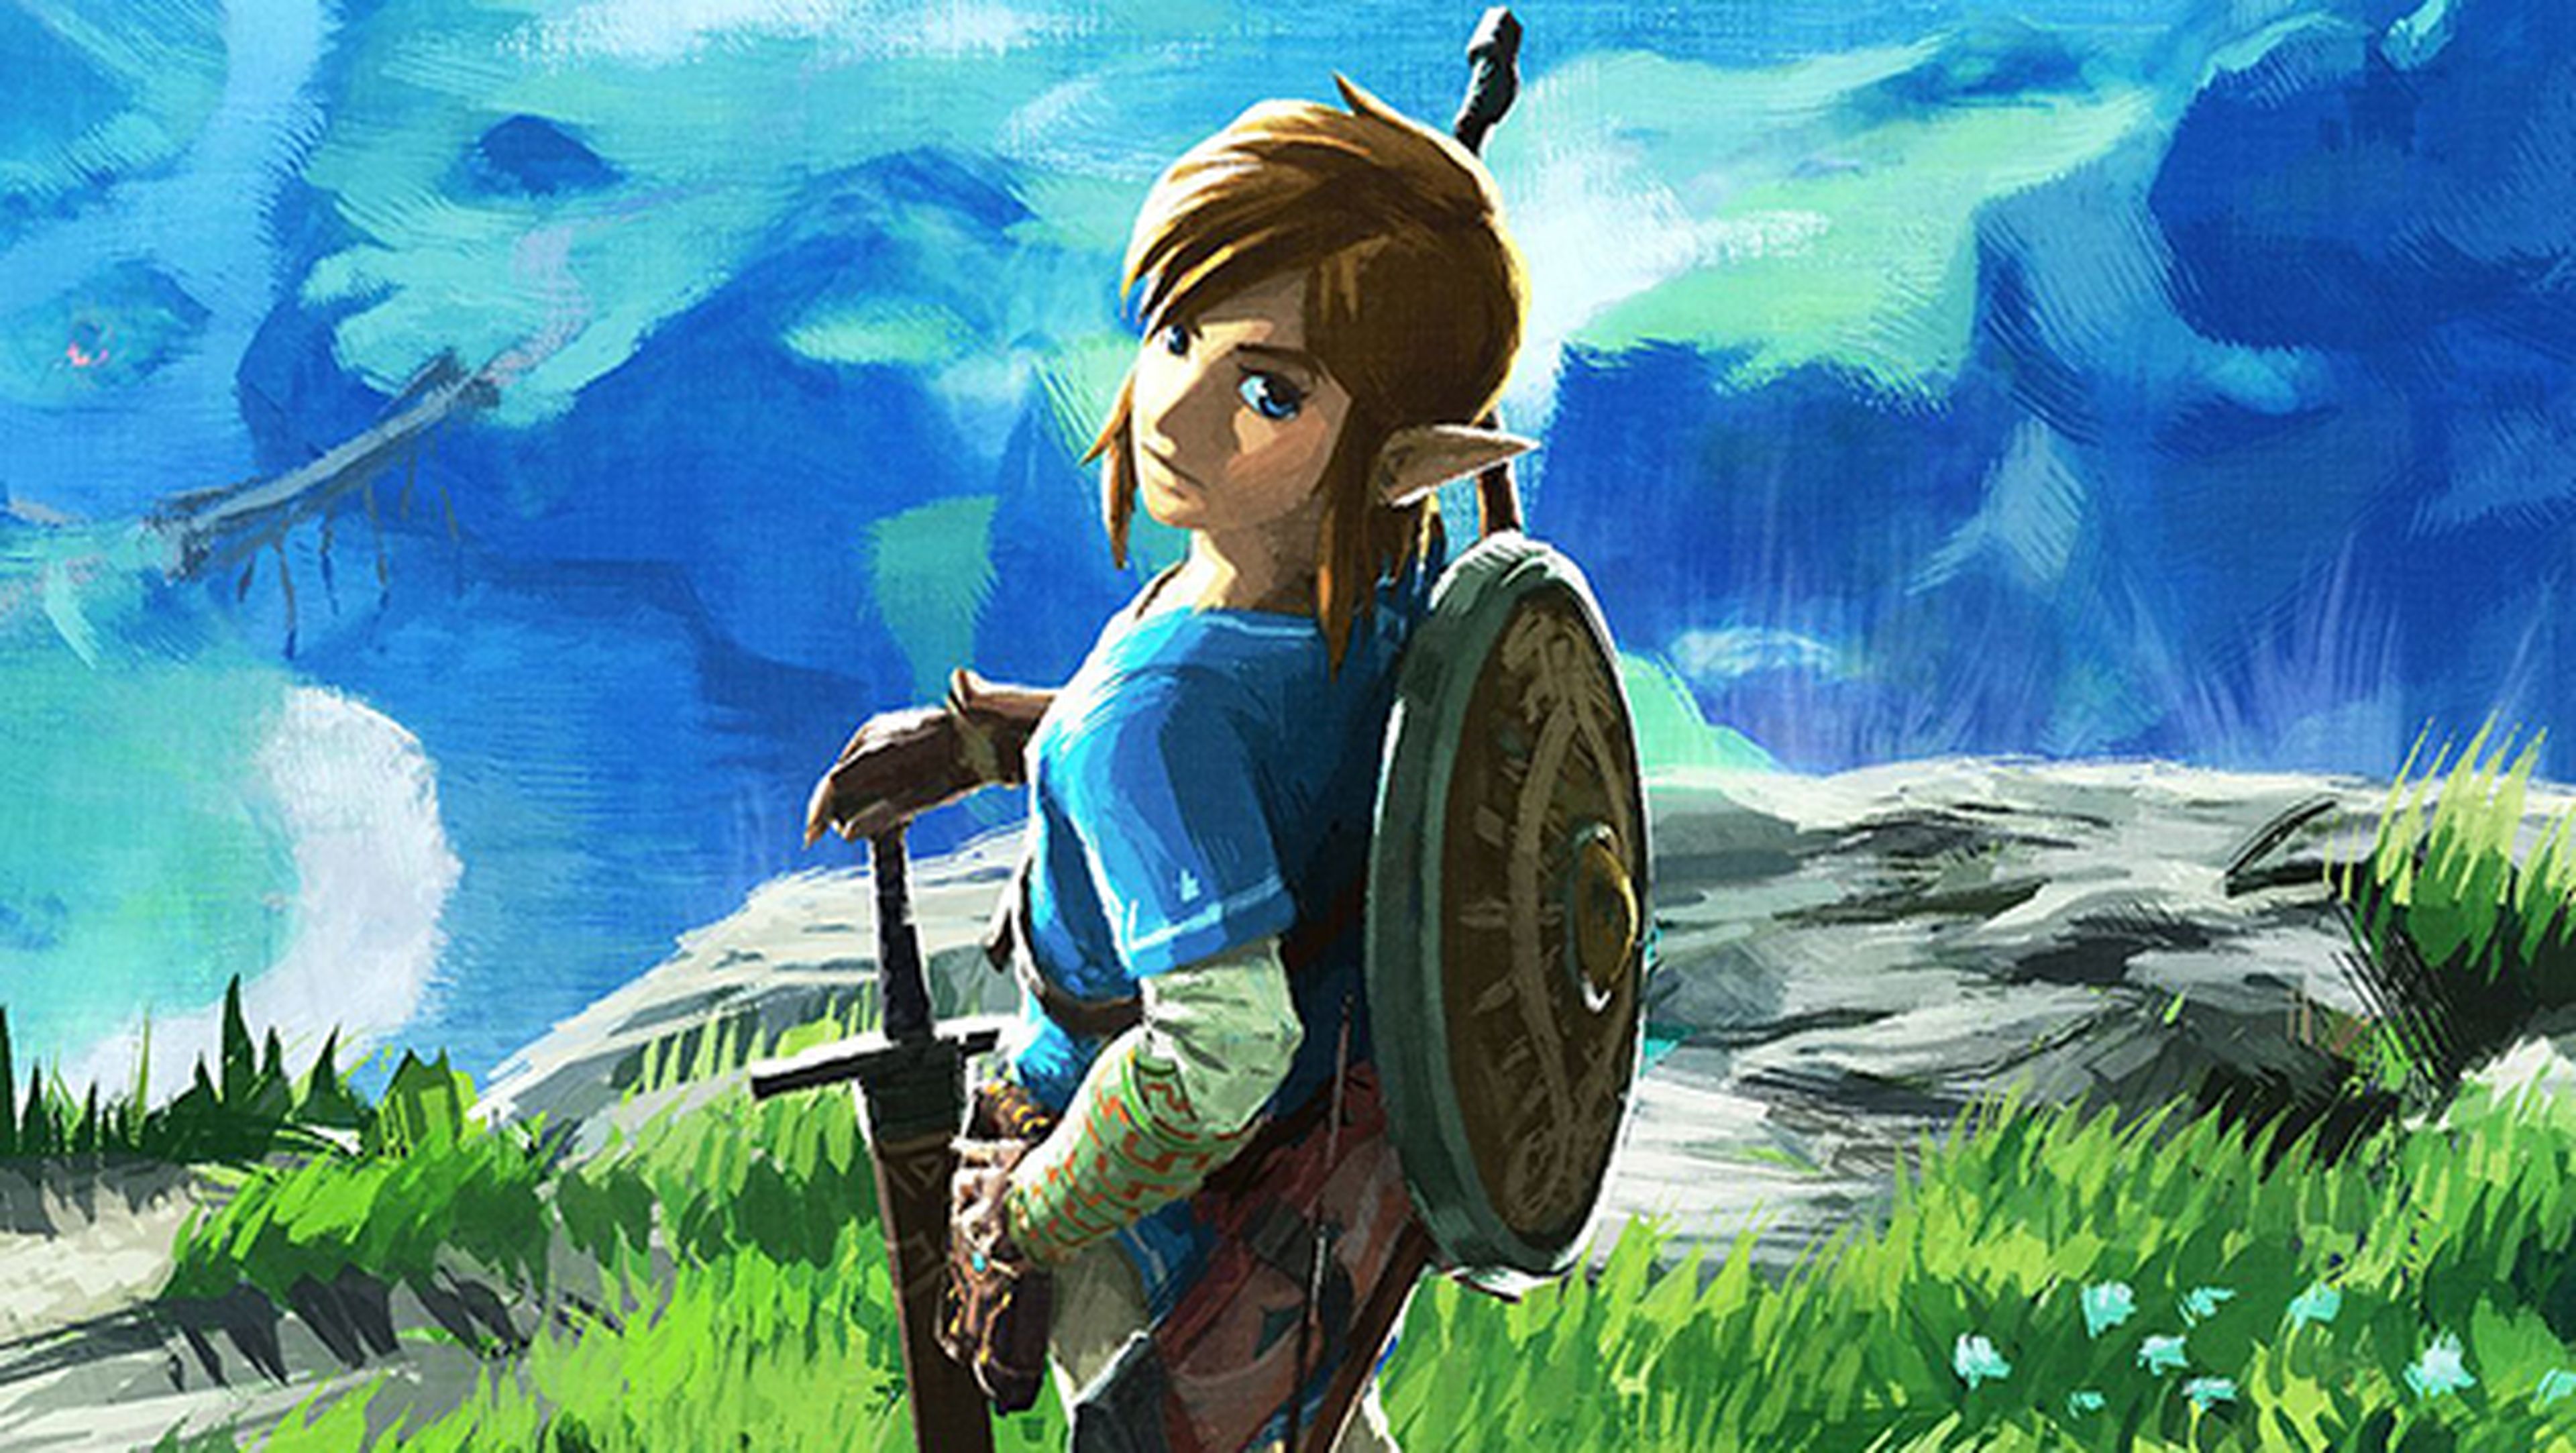 Acaban Zelda: Breath of the Wild en menos de una hora